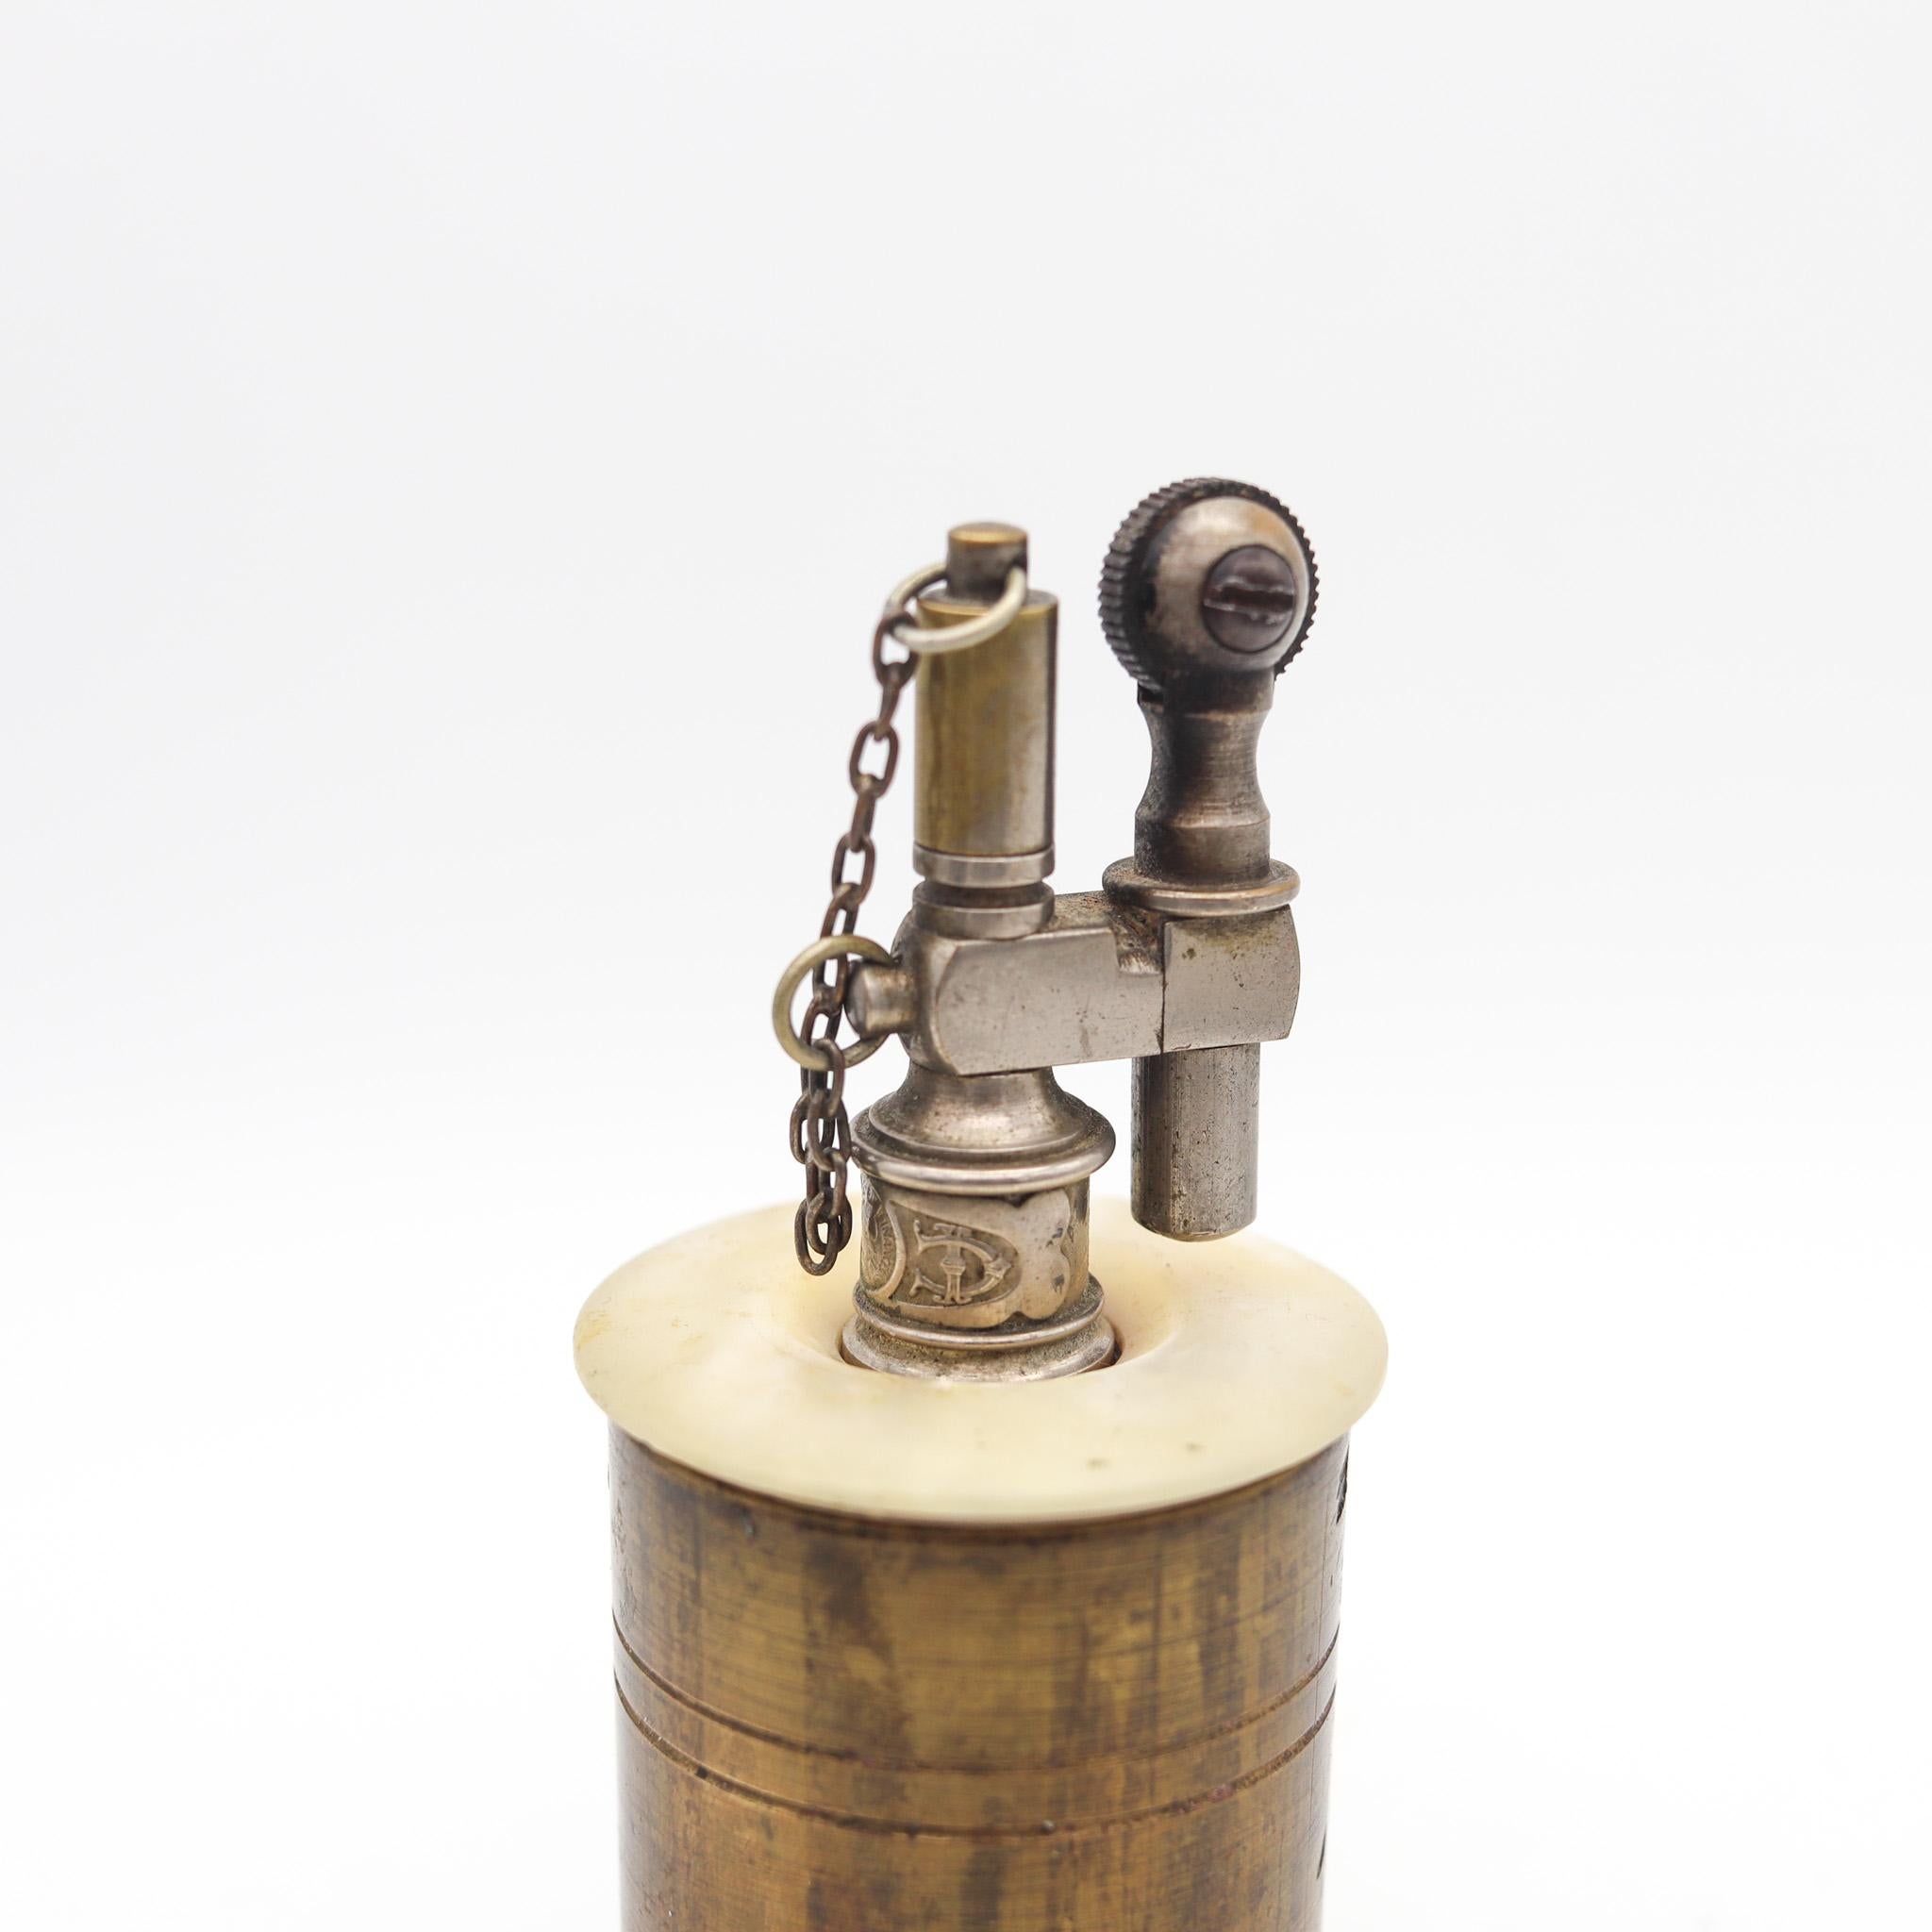 Tisch Benzinfeuerzeug entworfen von Tiffany & Co.

Schöne und ungewöhnliche antike Tabelle Benzinfeuerzeug, in Paris Frankreich von der Tiffany & Co. erstellt, zurück im Jahr 1919. Nach dem Ersten Weltkrieg als Grabenkunstwerk aus massivem,